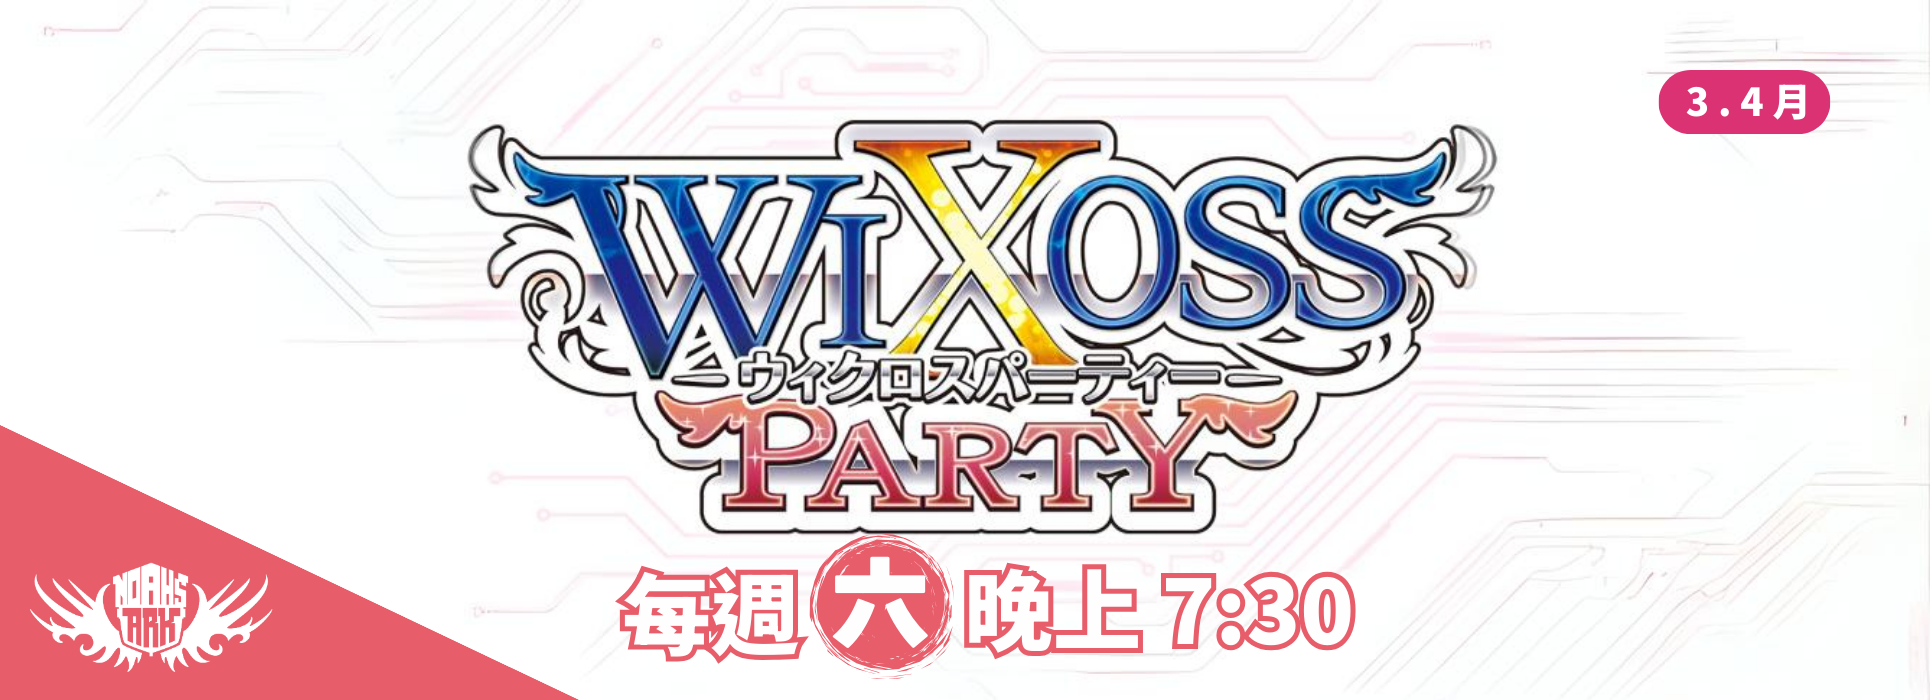 WX 3.4月派對